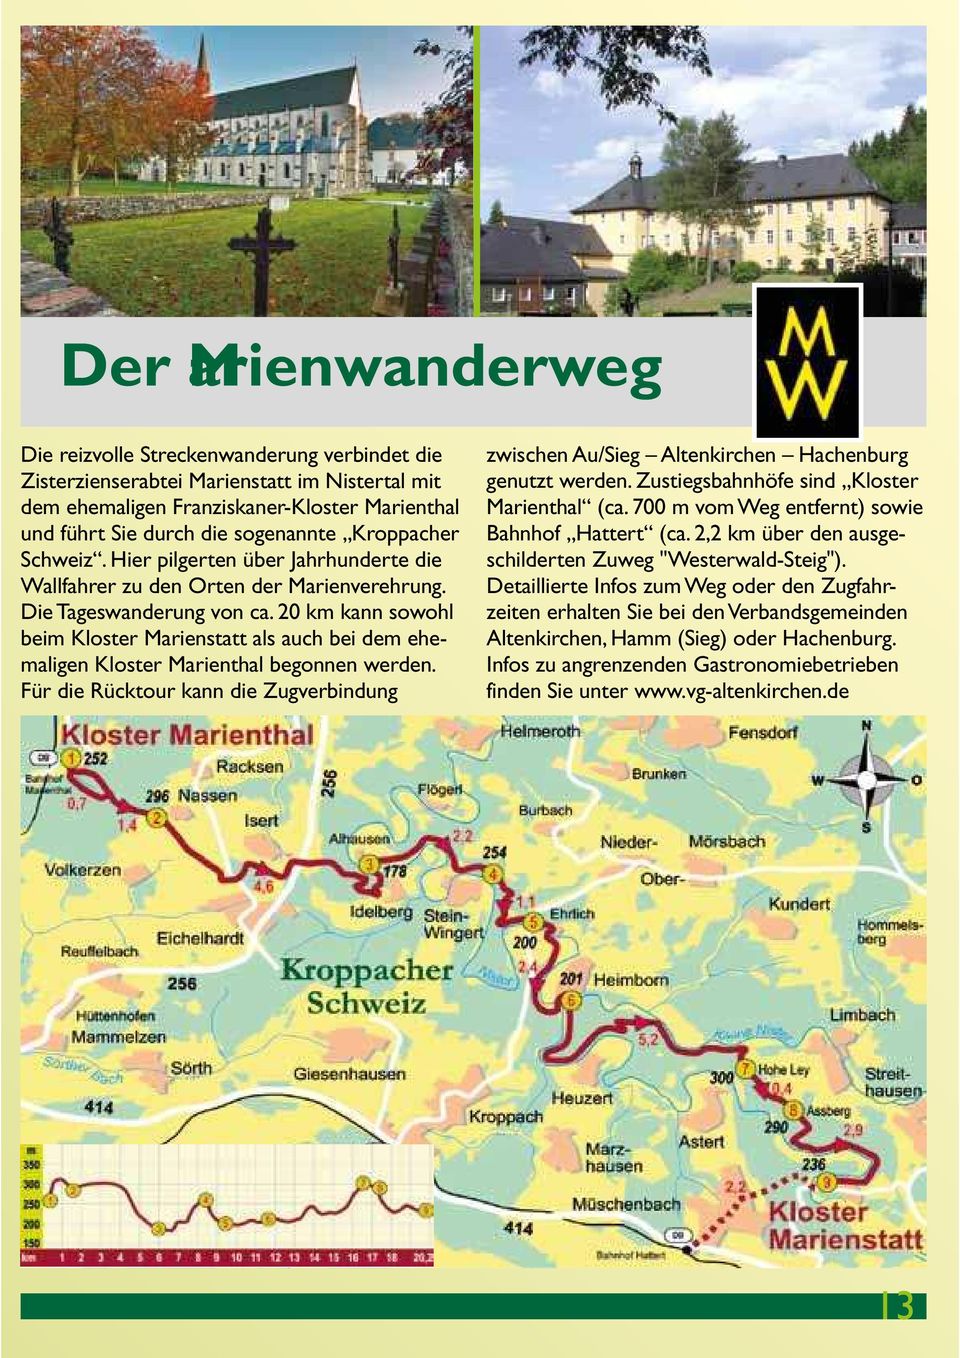 20 km kann sowohl beim Kloster Marienstatt als auch bei dem ehemaligen Kloster Marienthal begonnen werden.